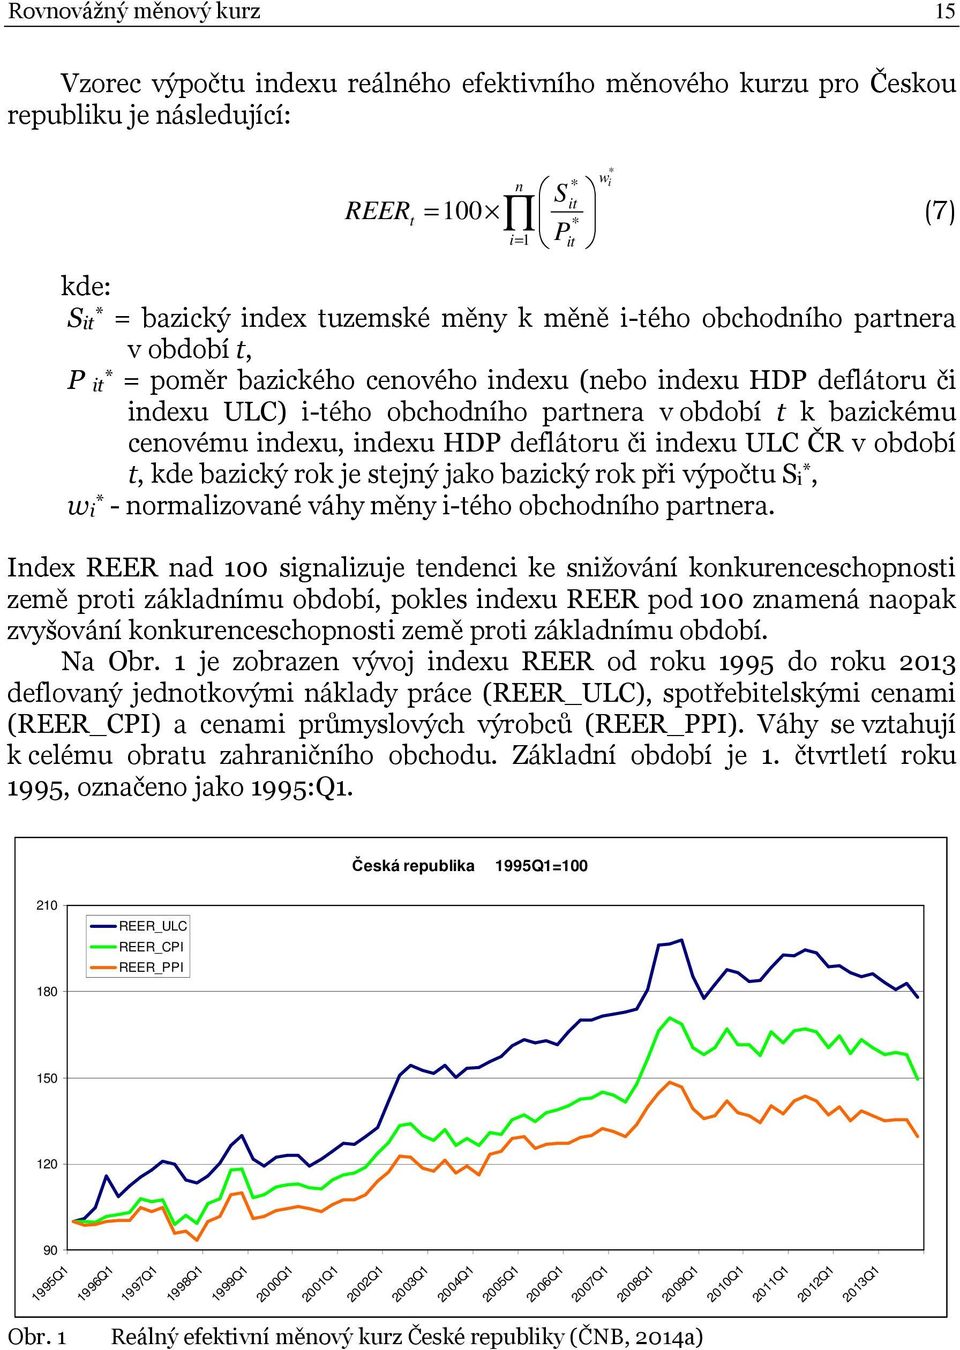 indexu, indexu HDP deflátoru či indexu ULC ČR v období t, kde bazický rok je stejný jako bazický rok při výpočtu Si *, wi * - normalizované váhy měny i-tého obchodního partnera.